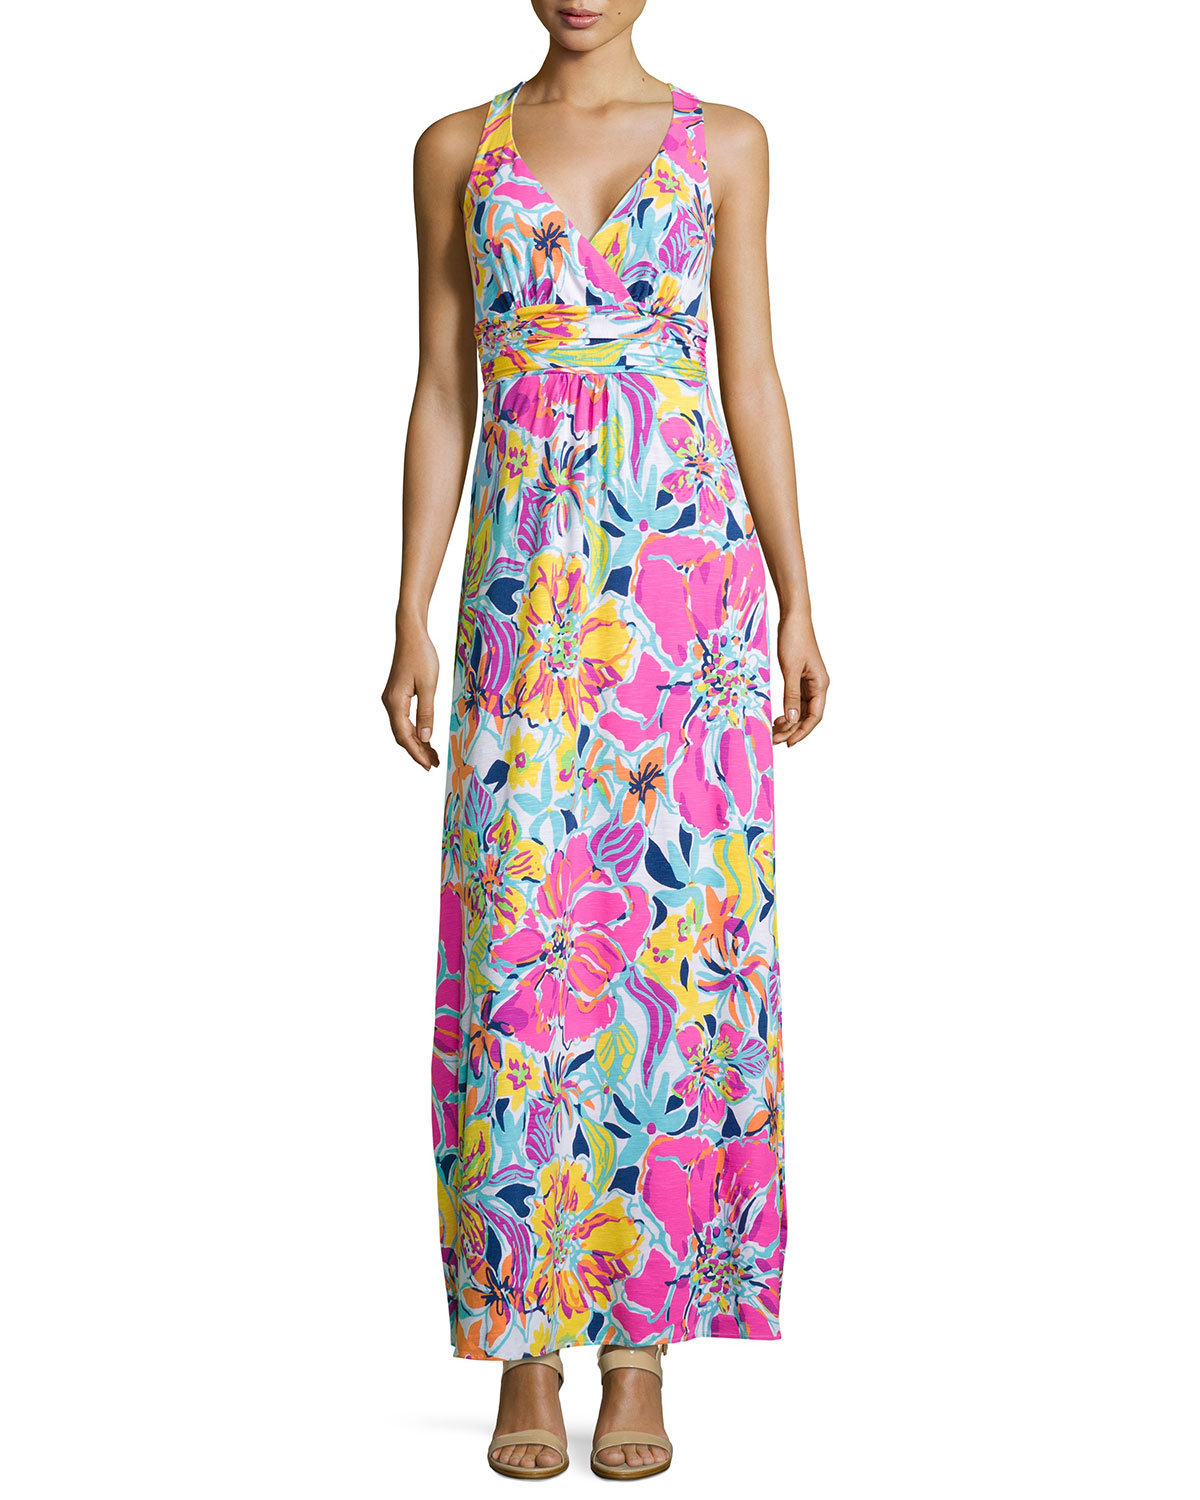 Lyst - Lilly Pulitzer Amanda Floral-Print Maxi Dress